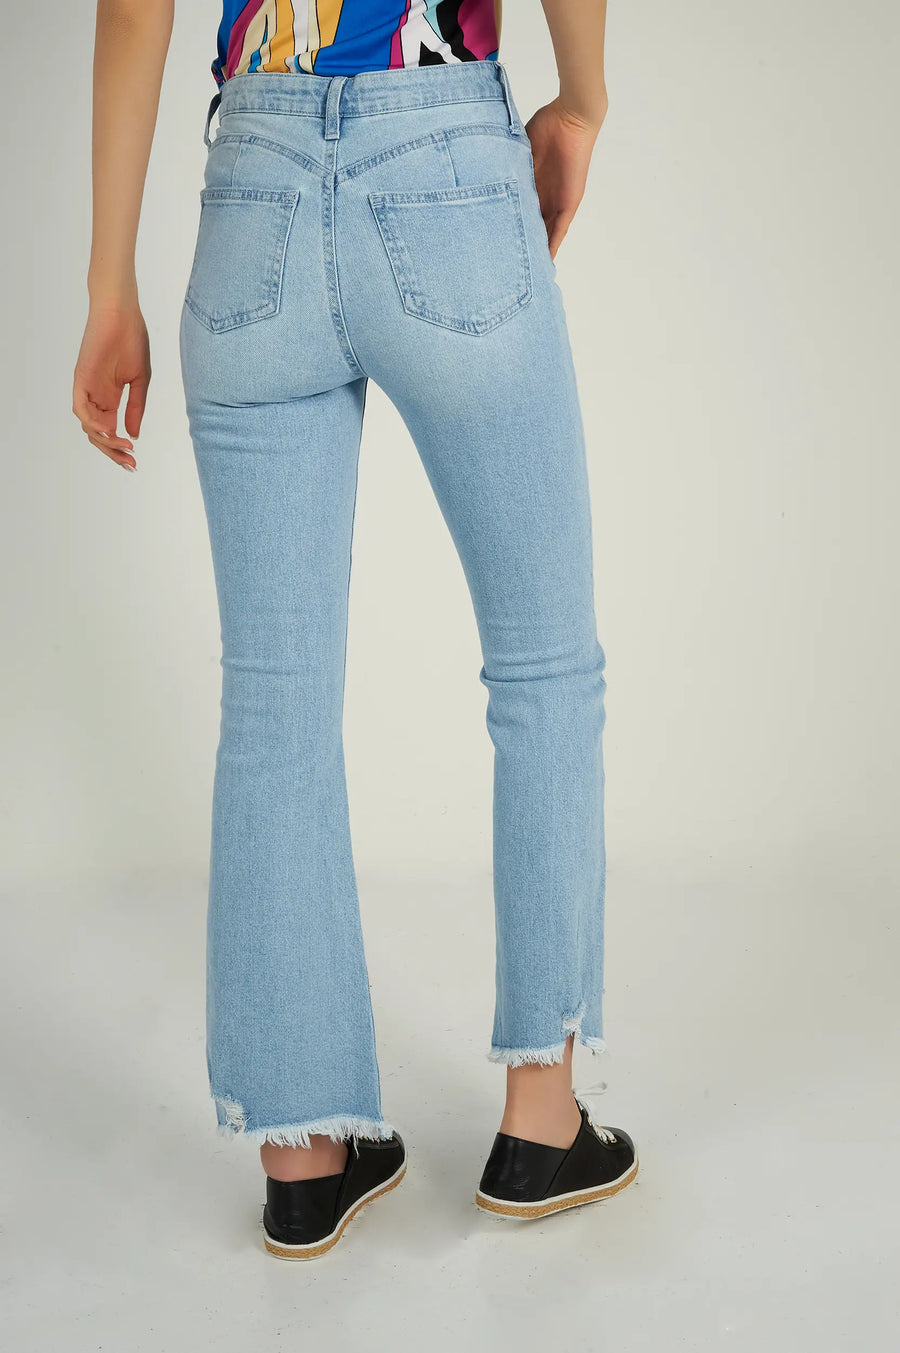 magasinez les jeans pour femme colori collection printemps été - shop women's jeans from cypresslapband spring summer collection